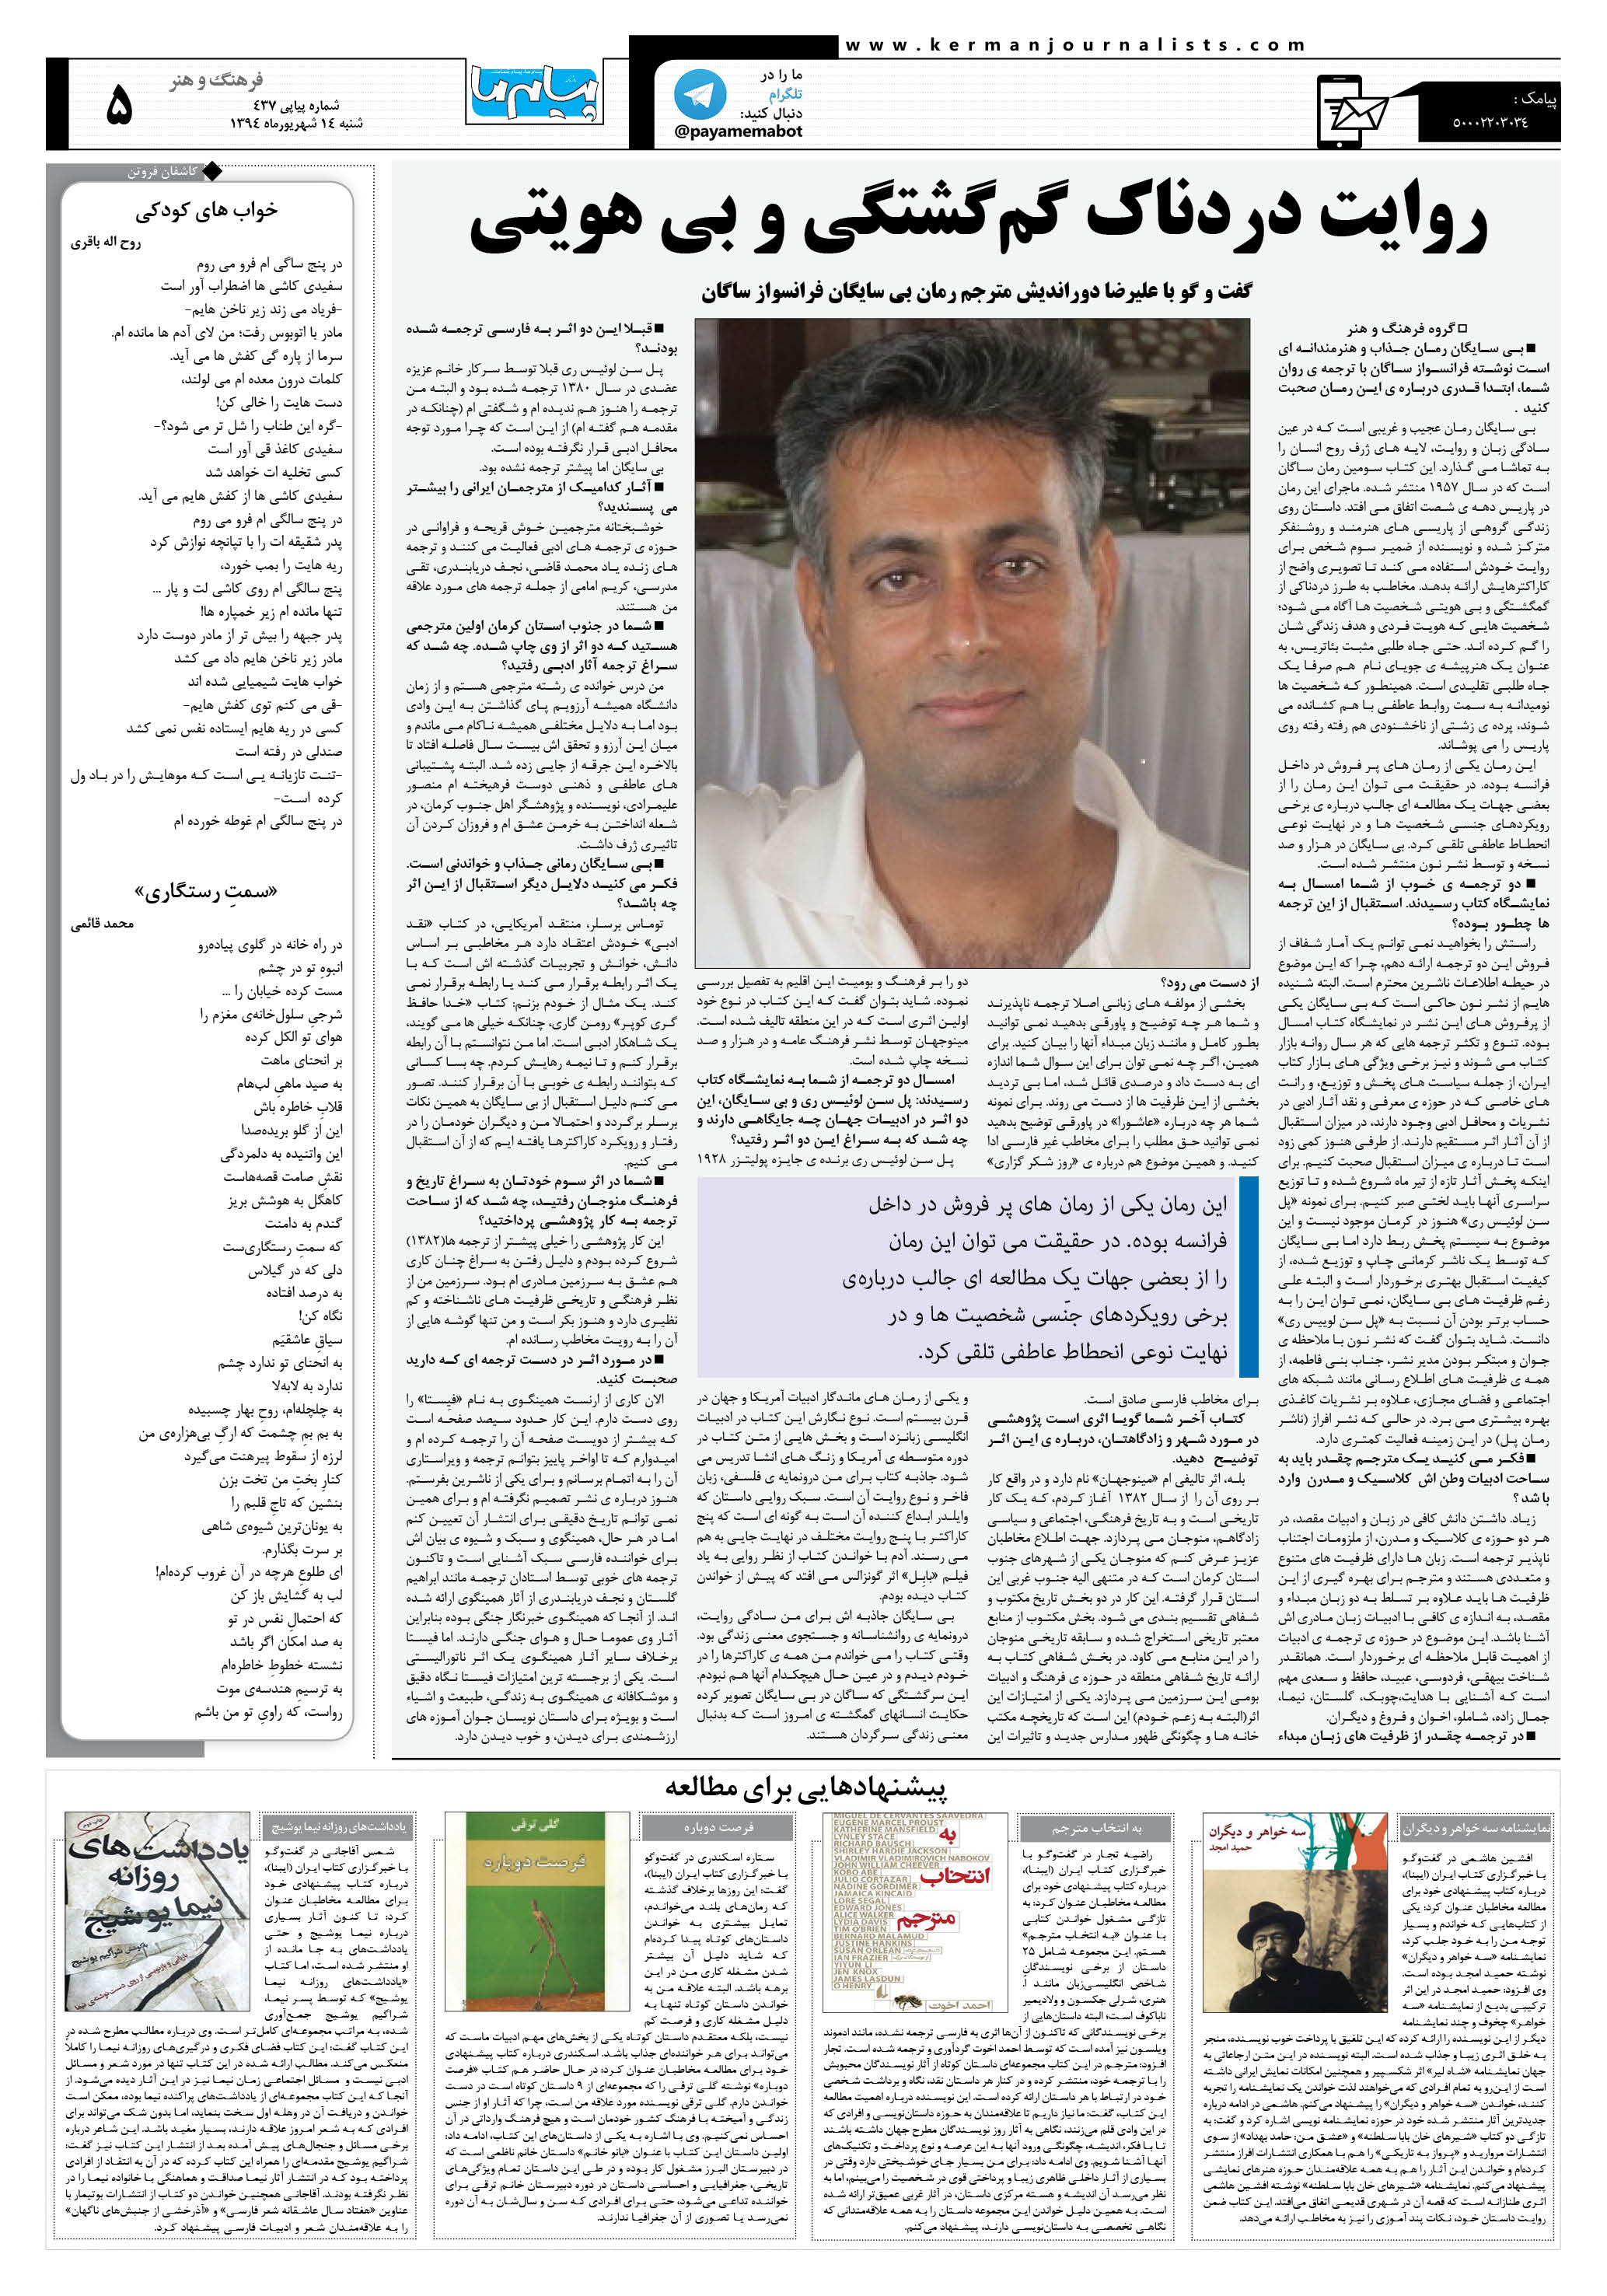 صفحه فرهنگ و ایران شماره 437 روزنامه پیام ما